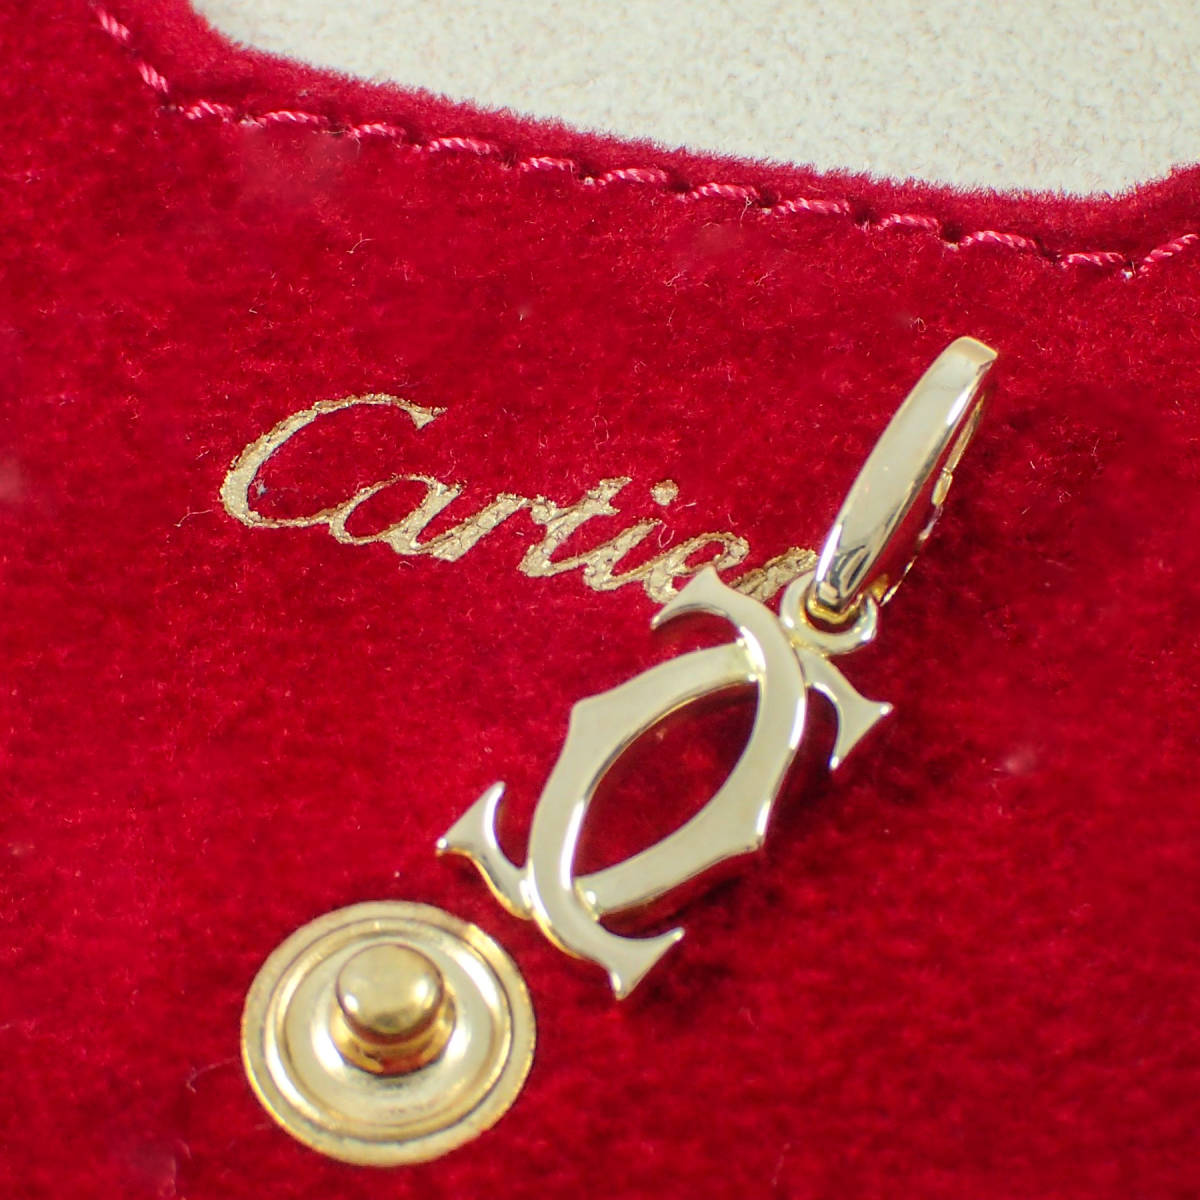 カルティエ Cartier K18YG 2C チャーム トップ C2 ペンダントトップ イエローゴールド カルティエポーチ付き